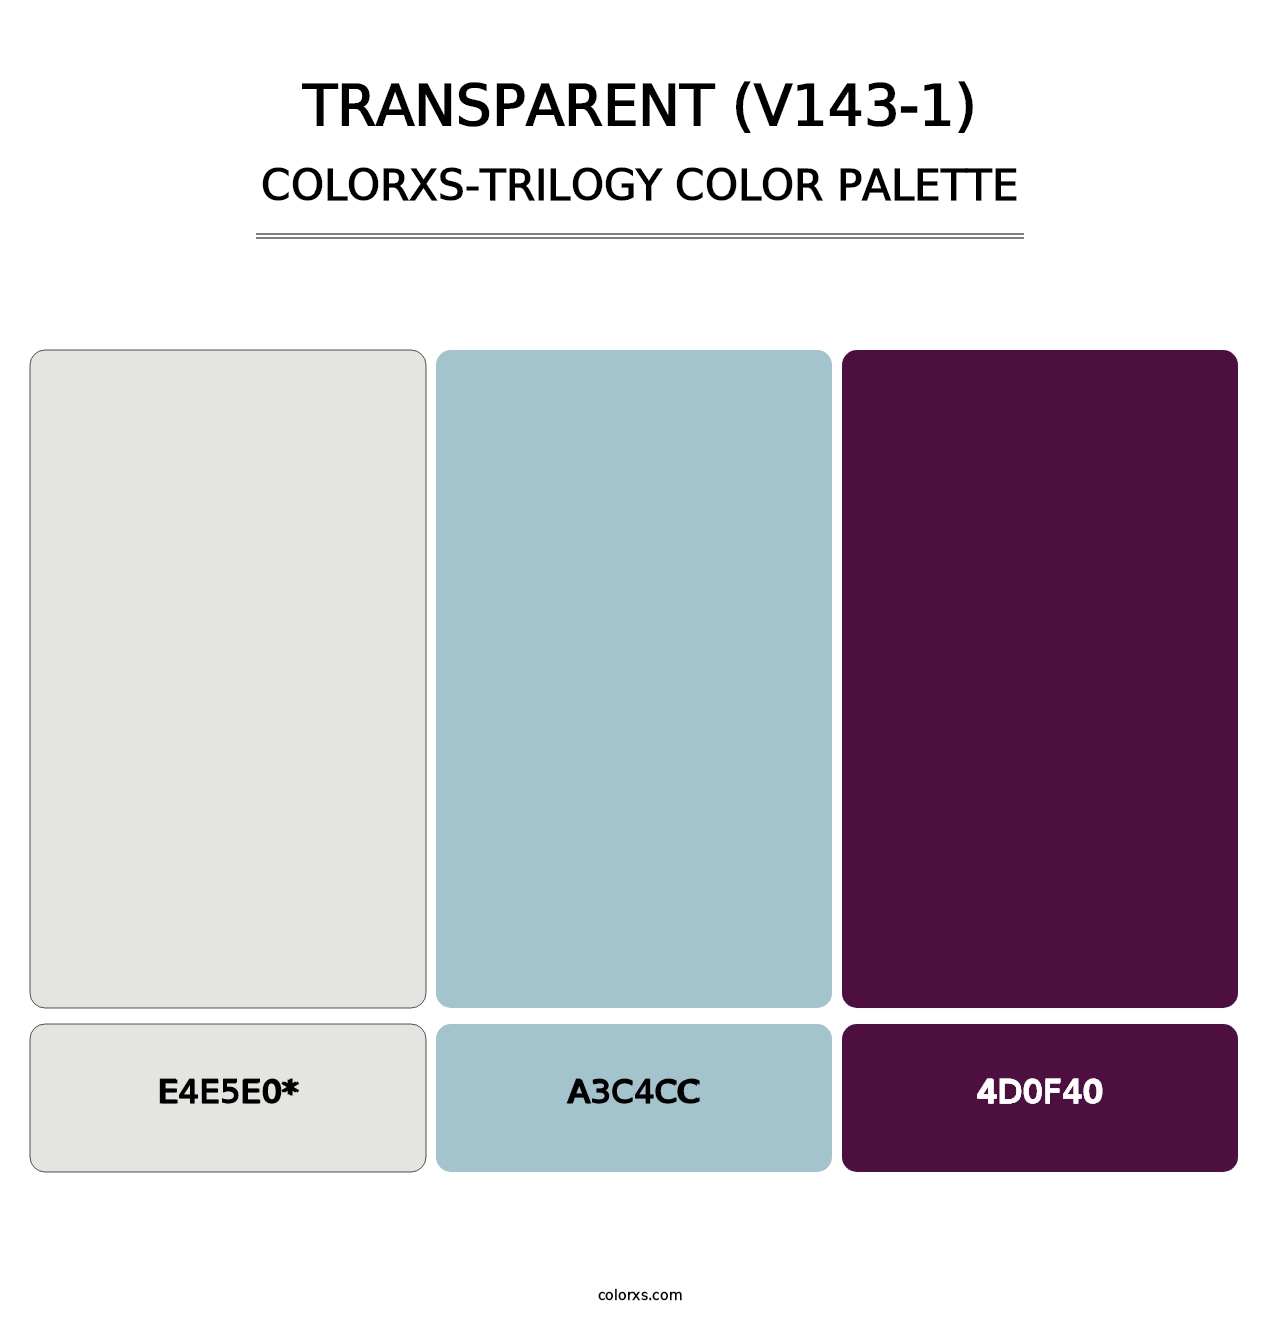 Transparent (V143-1) - Colorxs Trilogy Palette